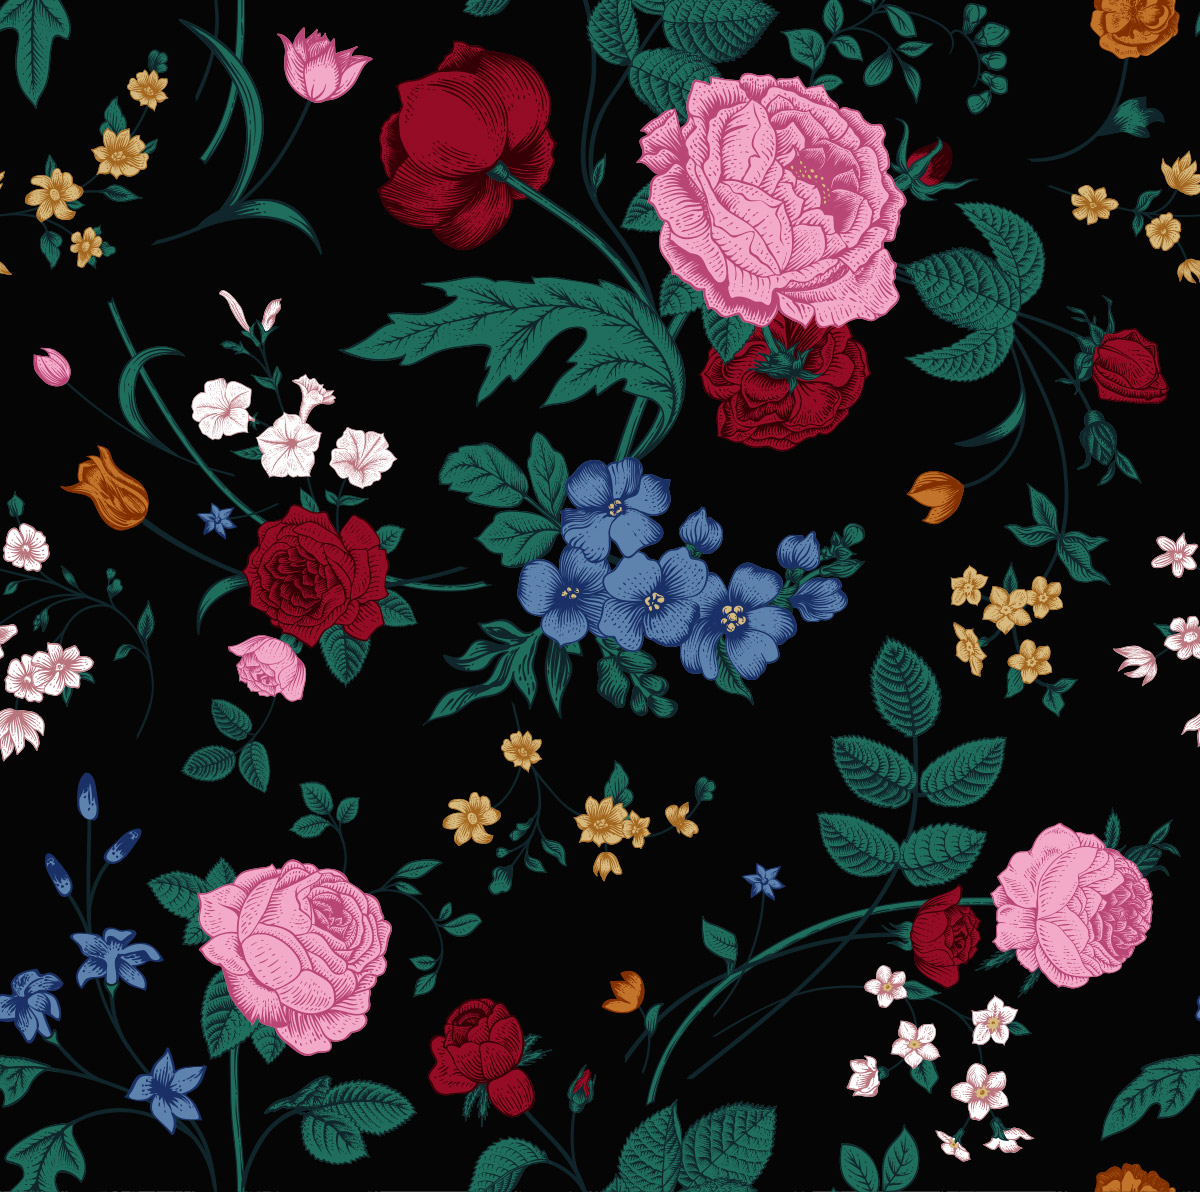 复古维多利亚鲜花彩色花卉无缝矢量古典图案背景设计素材Vict